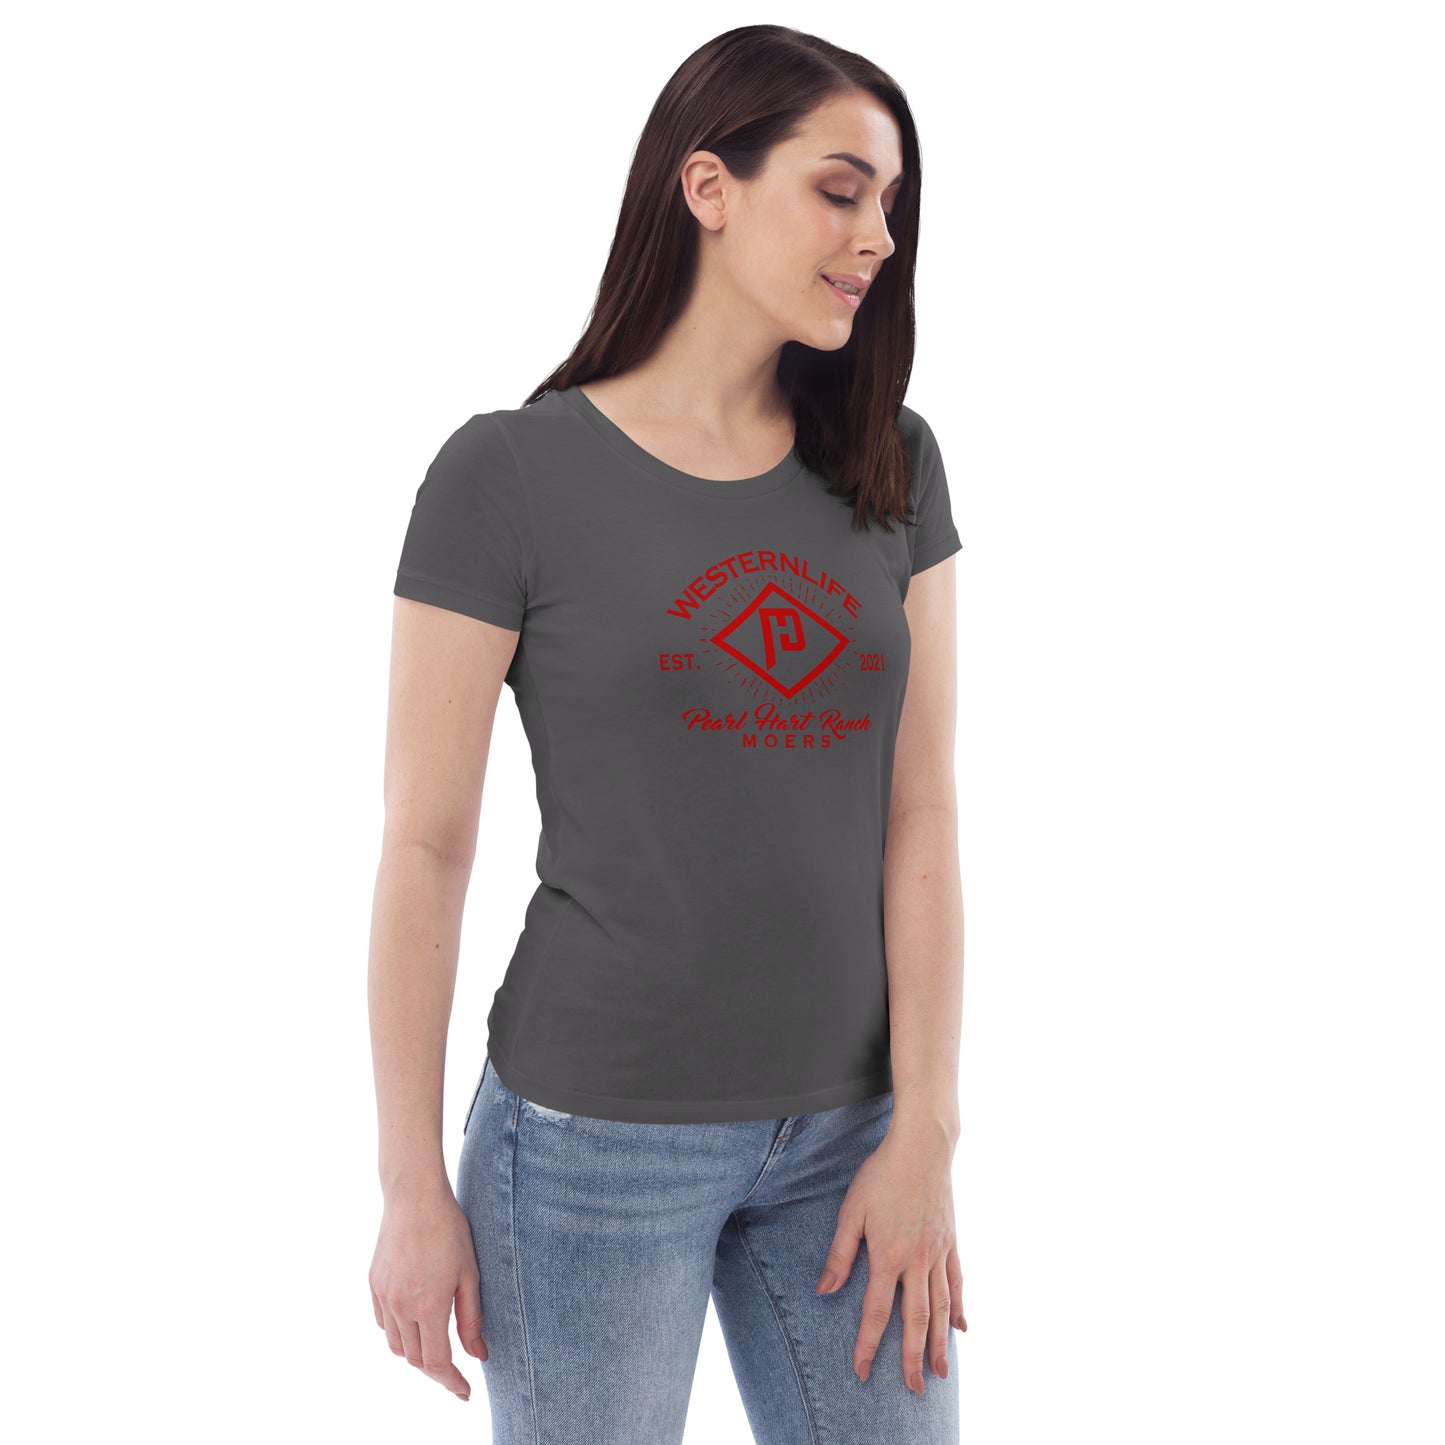 Pearl Hart Ranch Enganliegendes Öko-T-Shirt für Damen „Brand“